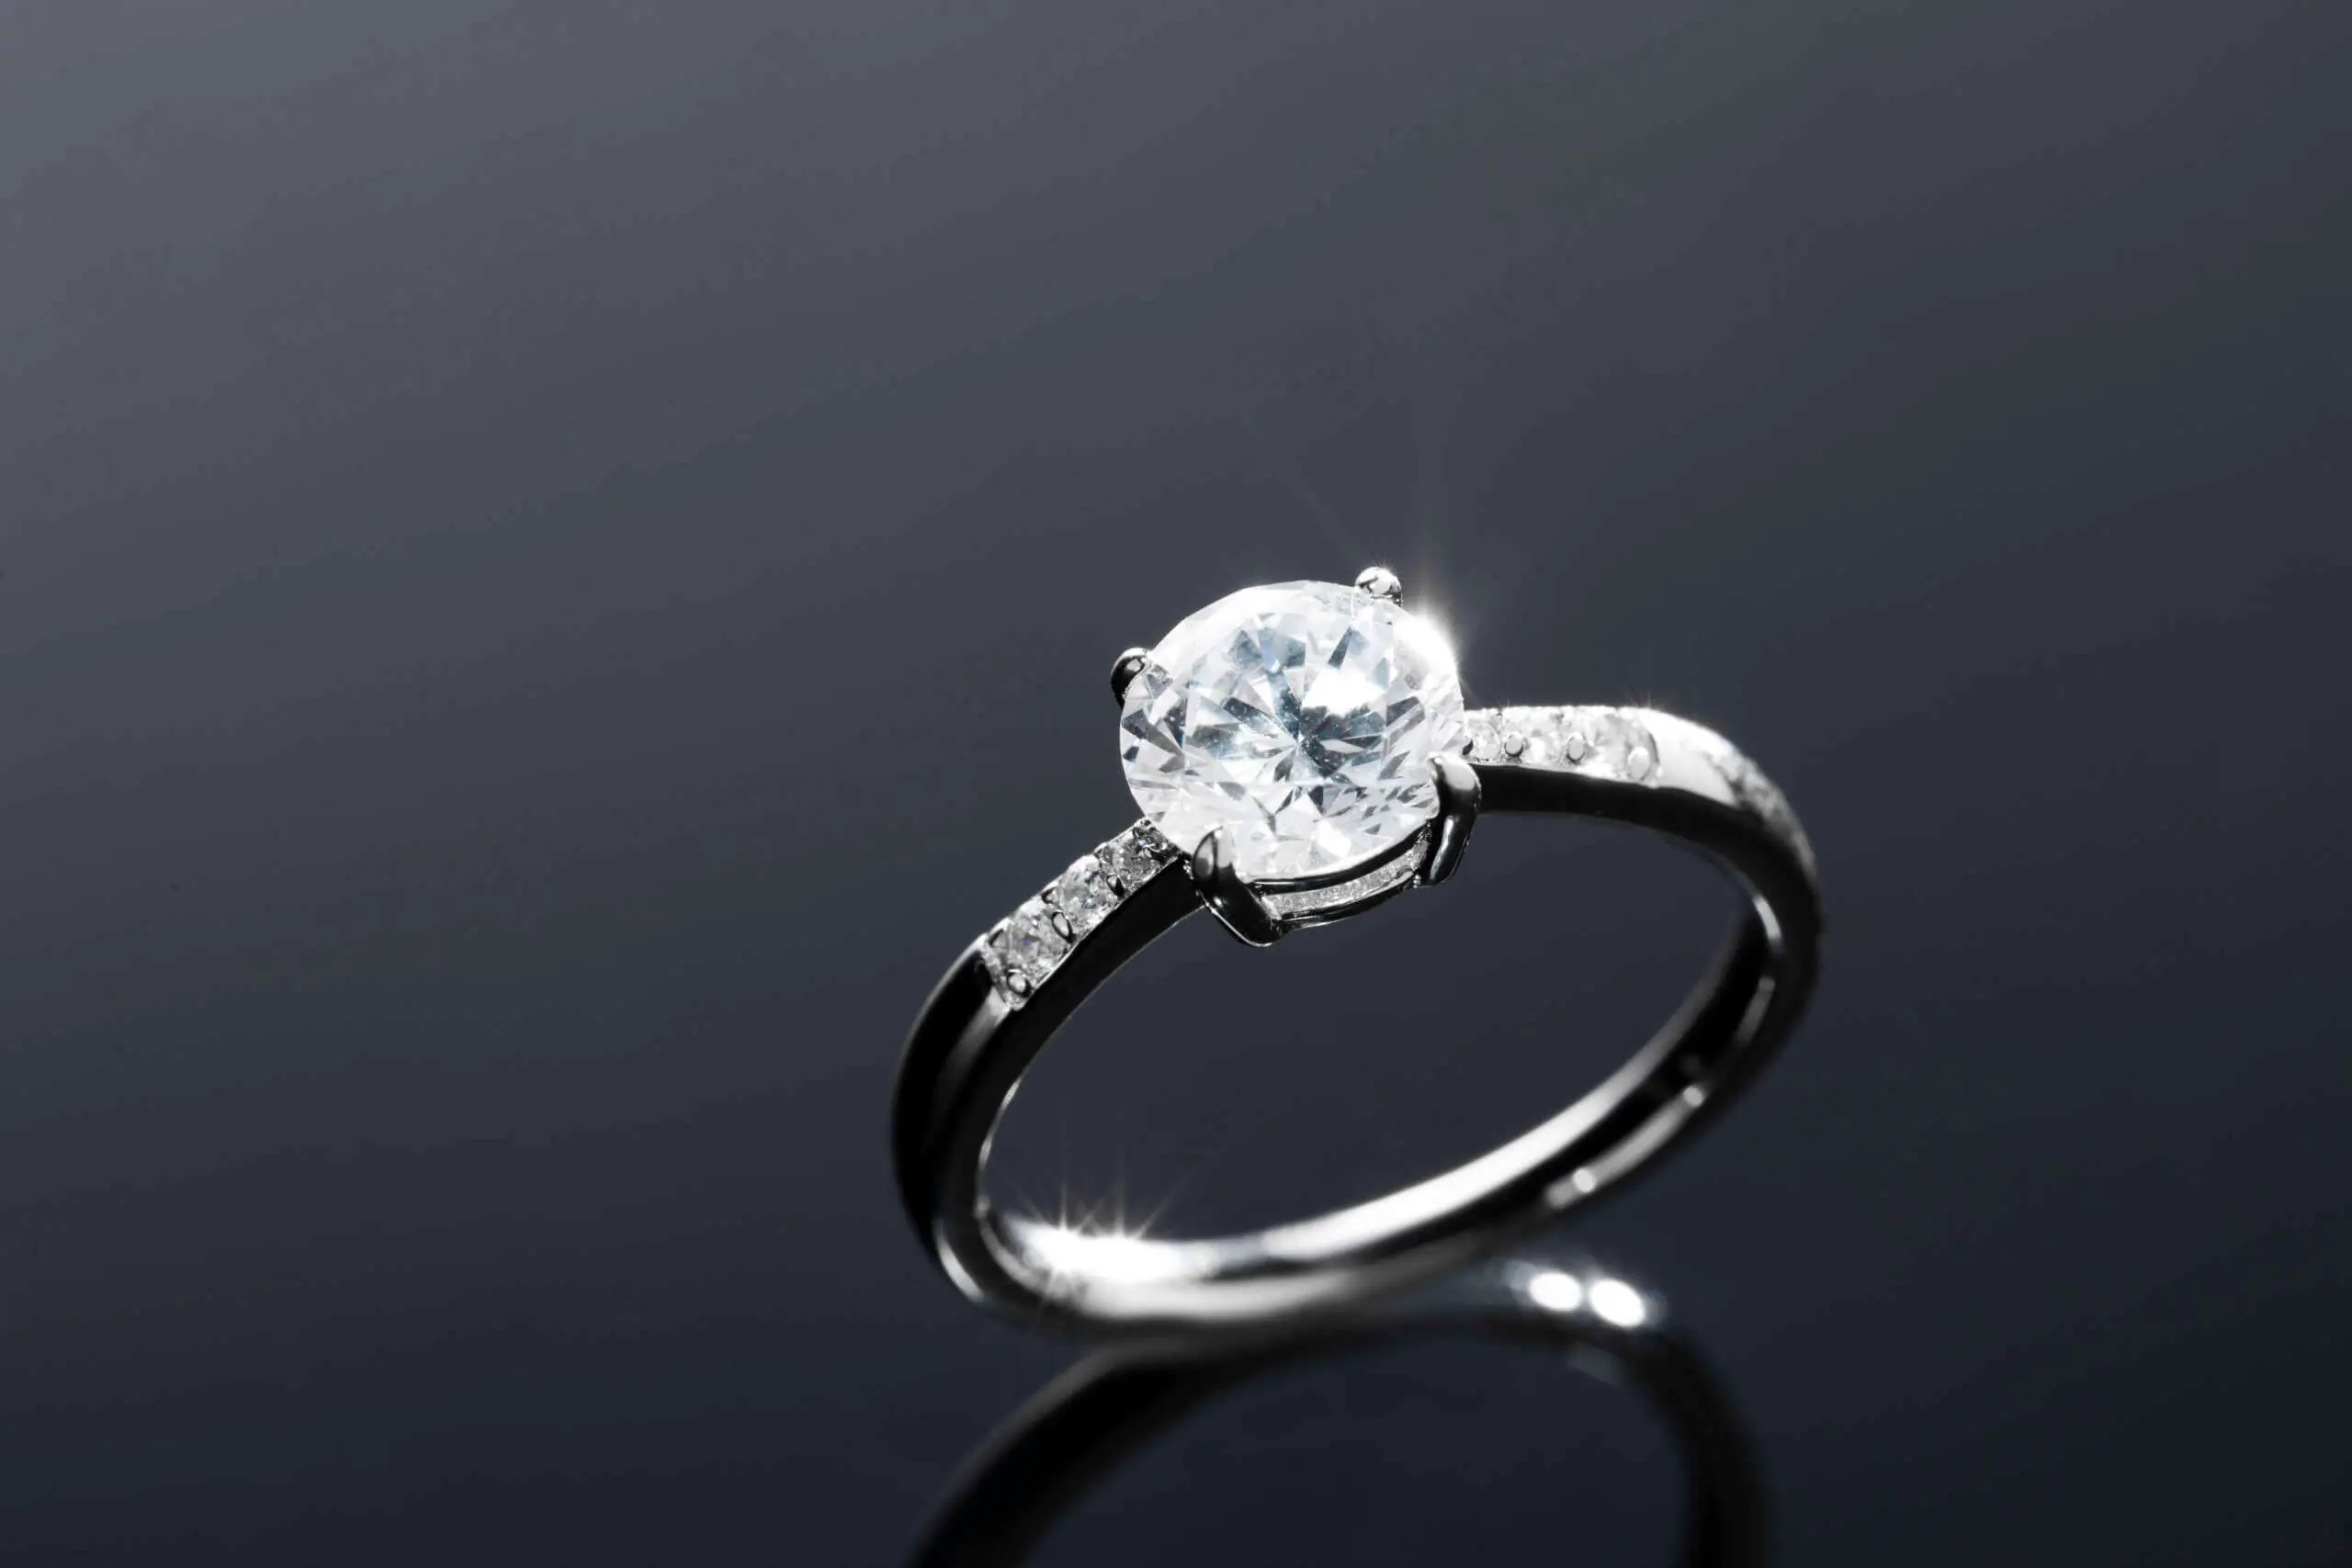 Valutazione anello con diamante, come richiederla?